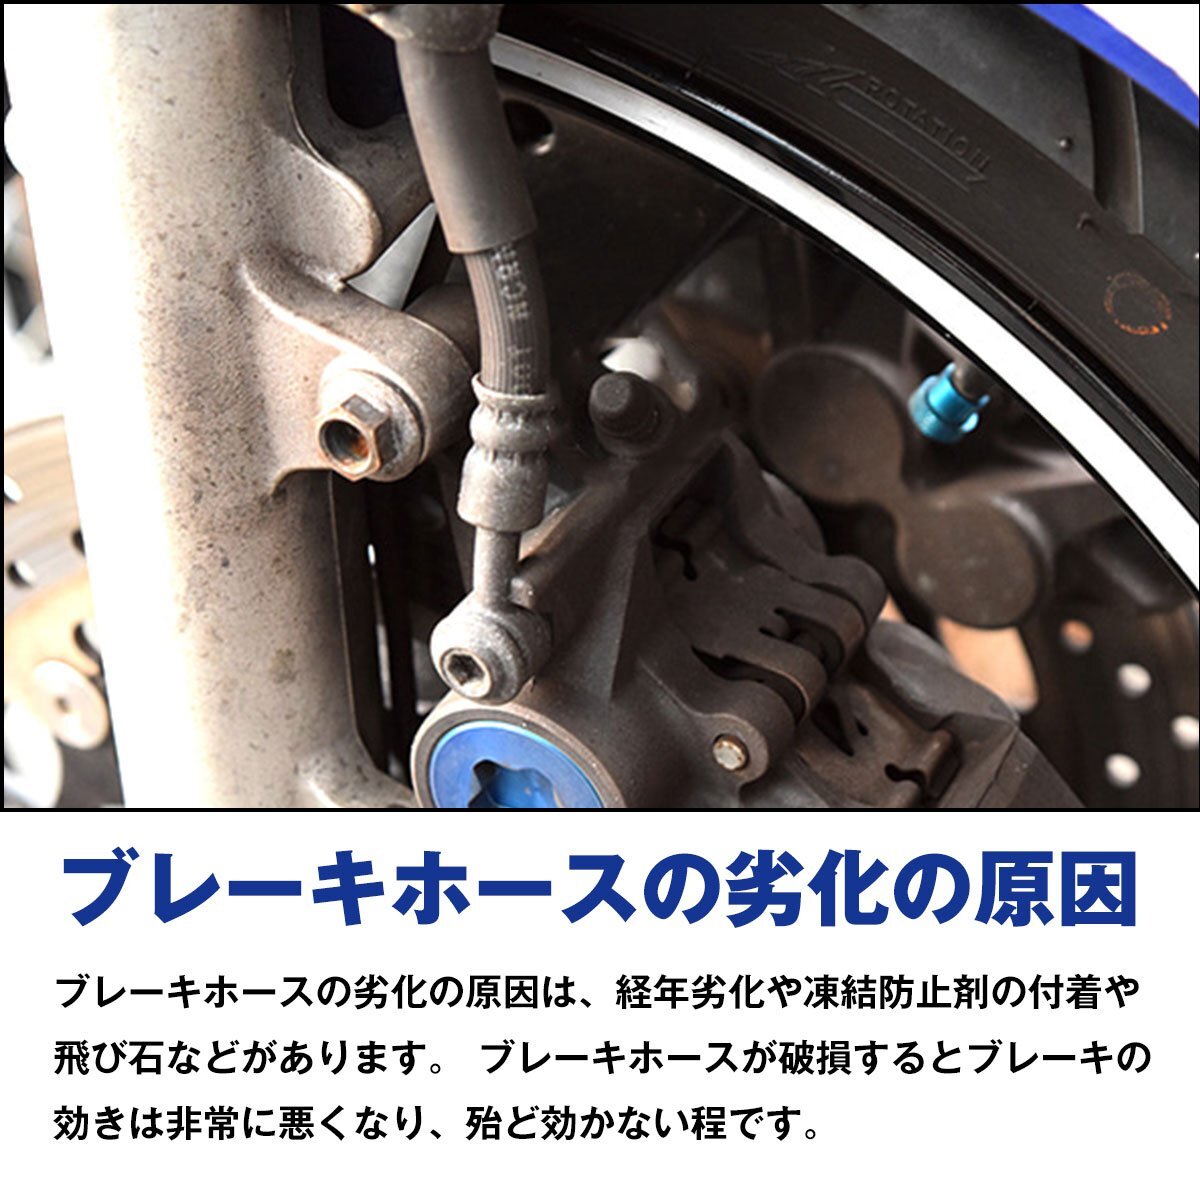 [ new goods immediate payment ] Honda VTR1000F oil pressure stain mesh hose angle strut &20° rear rear for rear brake hose 1 pcs black B